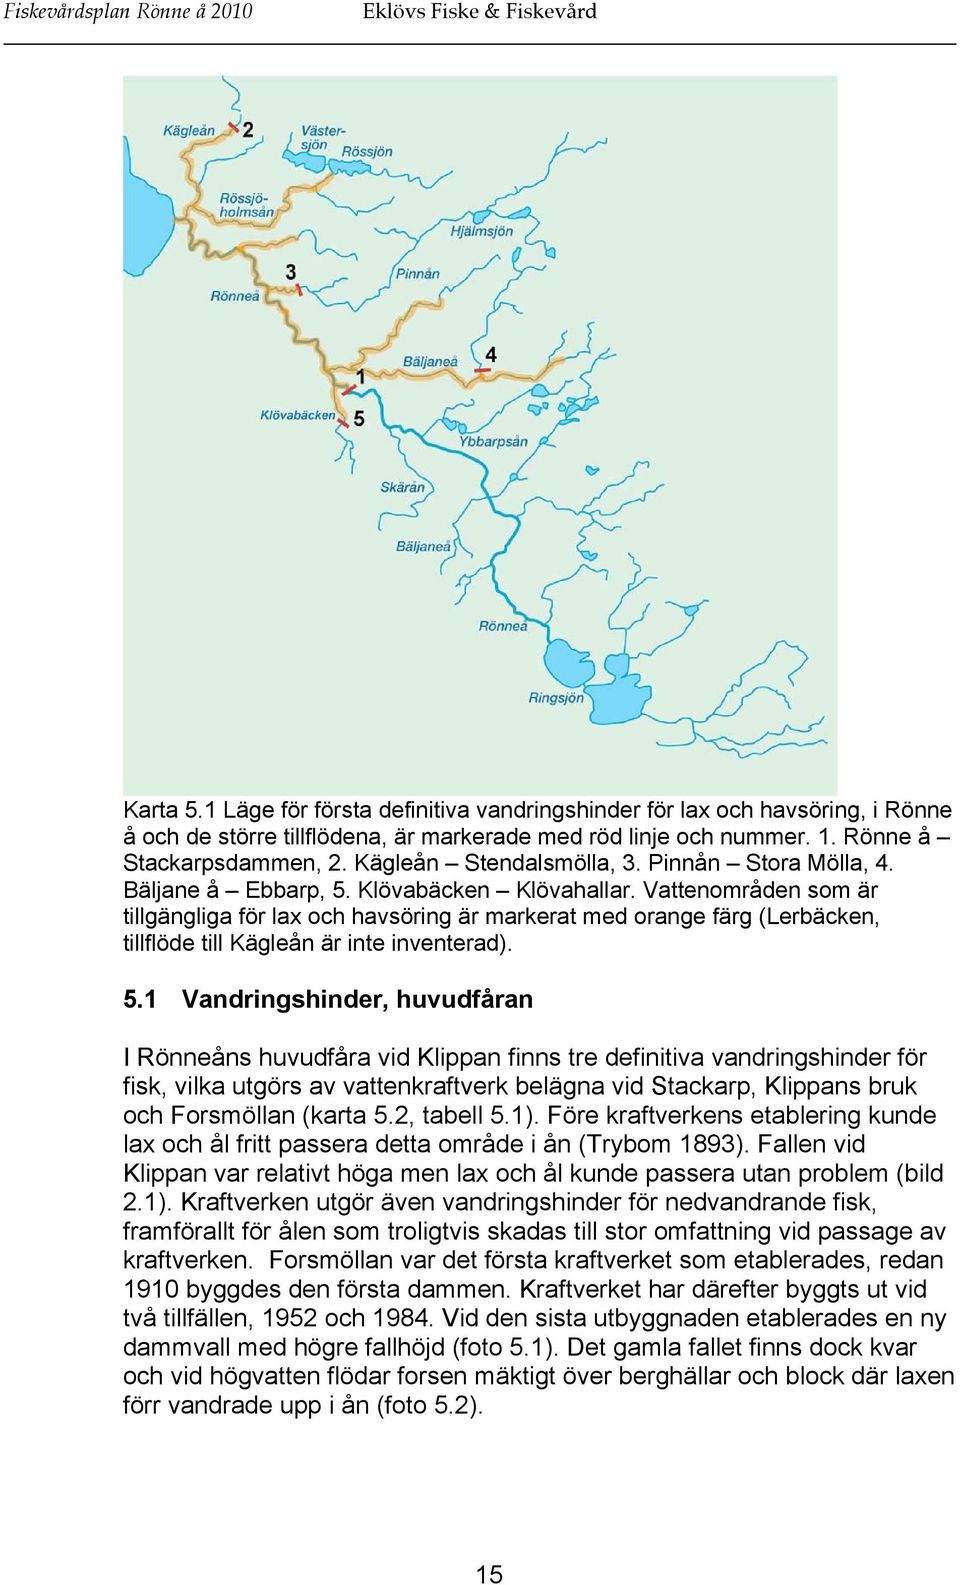 Vattenområden som är tillgängliga för lax och havsöring är markerat med orange färg (Lerbäcken, tillflöde till Kägleån är inte inventerad). 5.